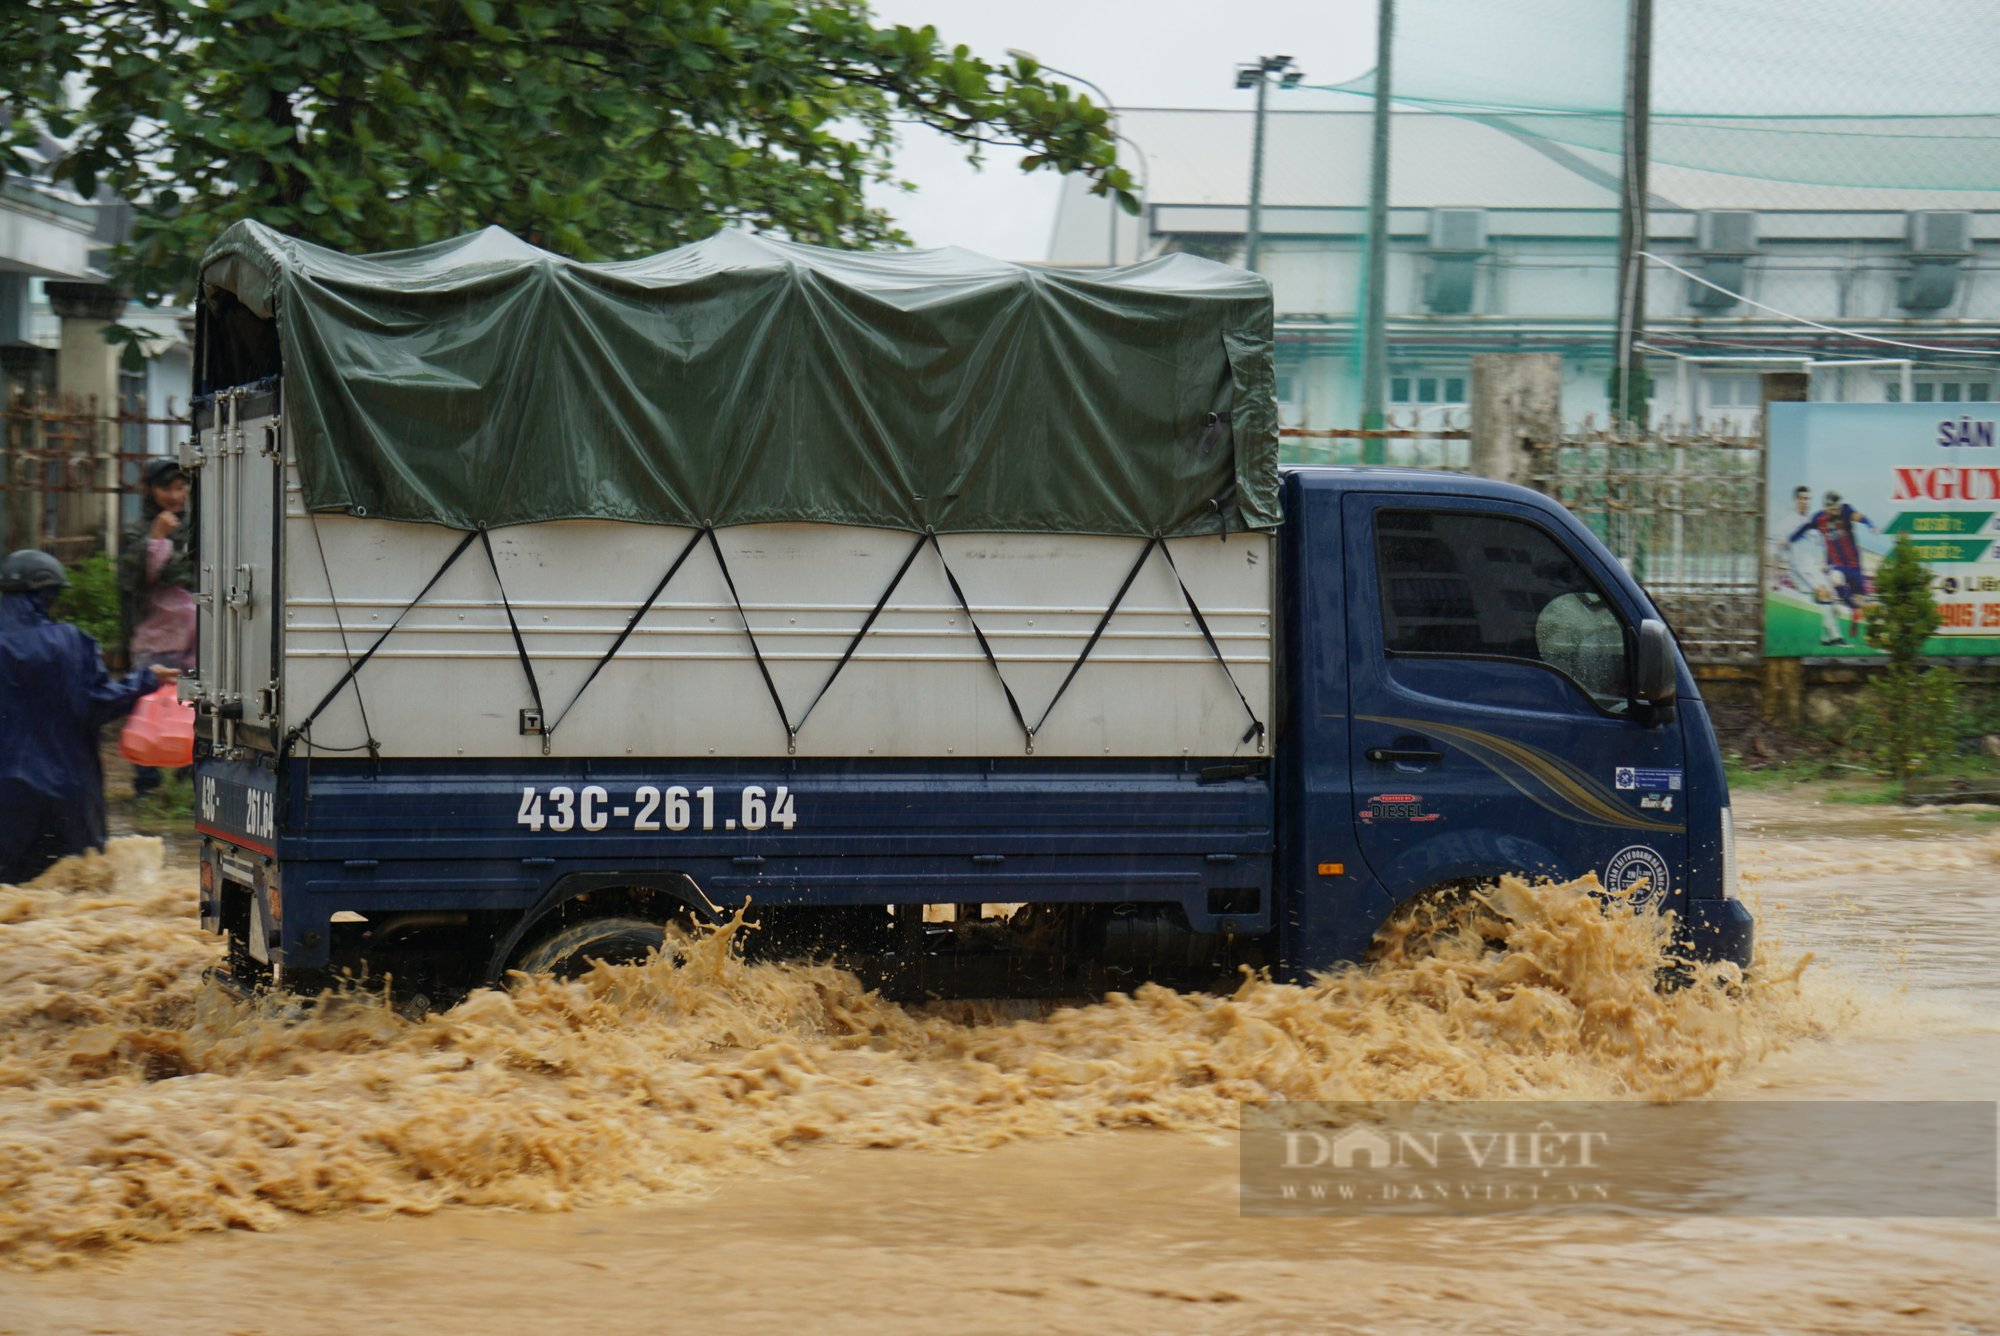 Chỉ hơn 1 tuần sau trận mưa lịch sử, Đà Nẵng lại ngập do mưa lớn - Ảnh 5.